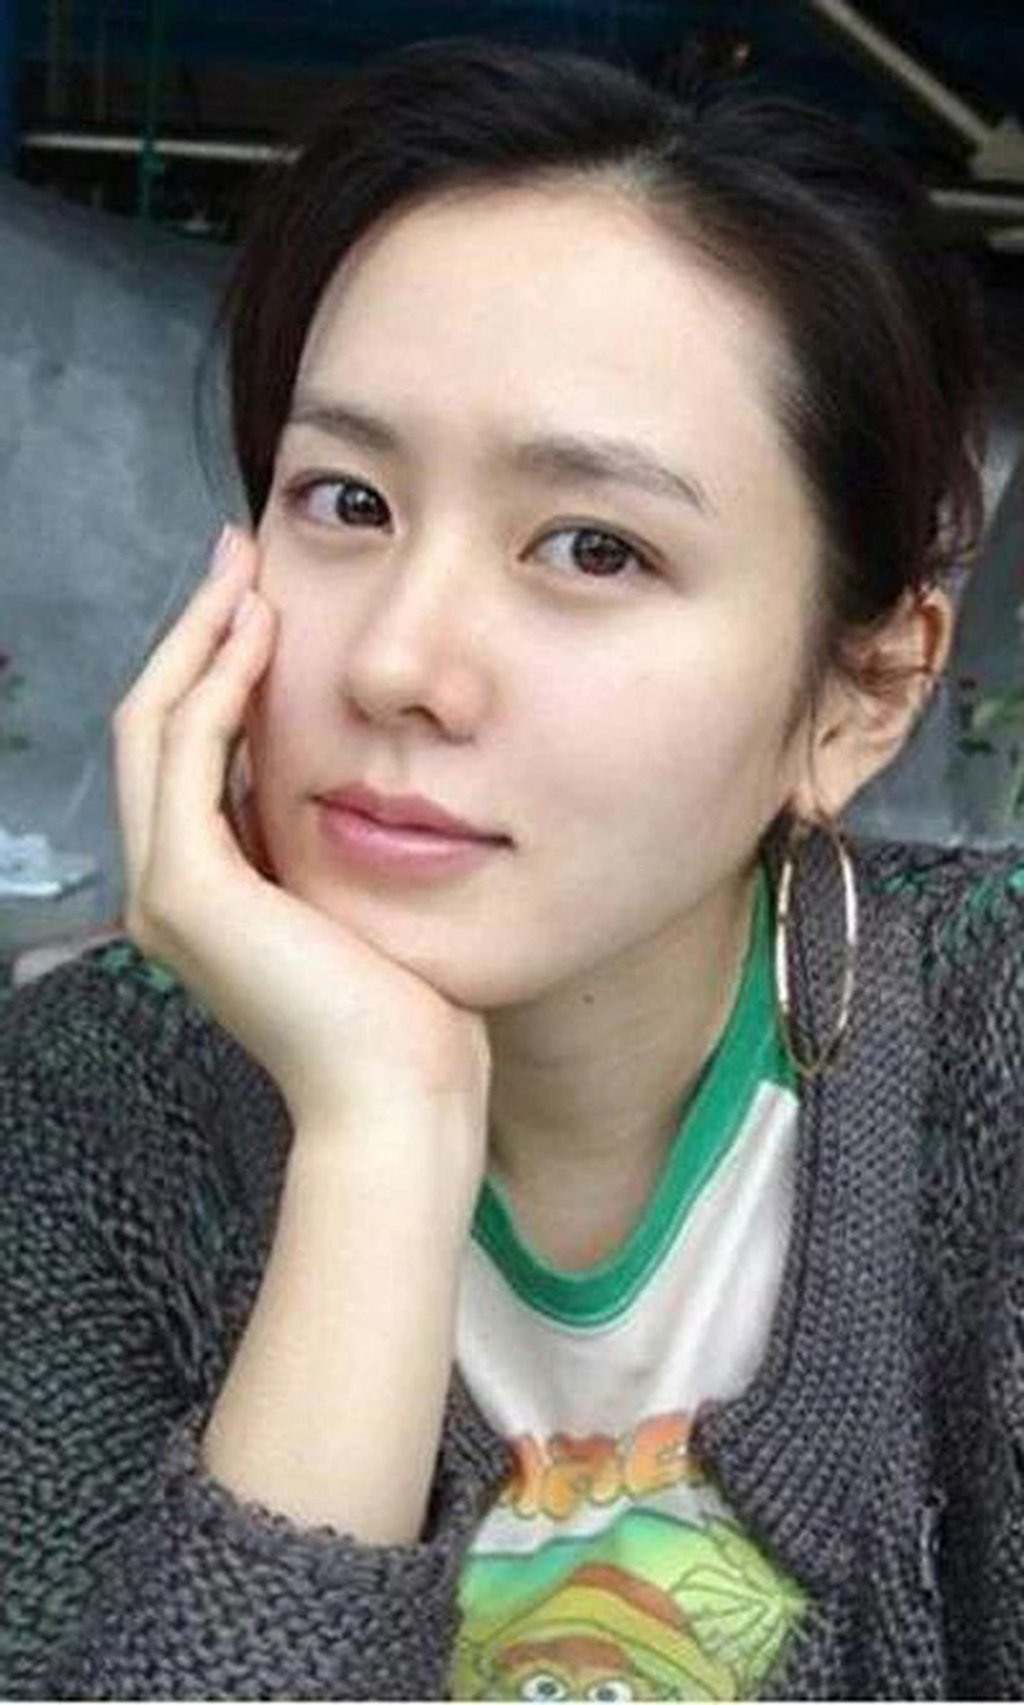 Mặt mộc huyền thoại của nữ minh tinh Son Ye Jin trong quá khứ trở thành chủ đề bán tán rôm rả của fan trên mạng xã hội không ít lần